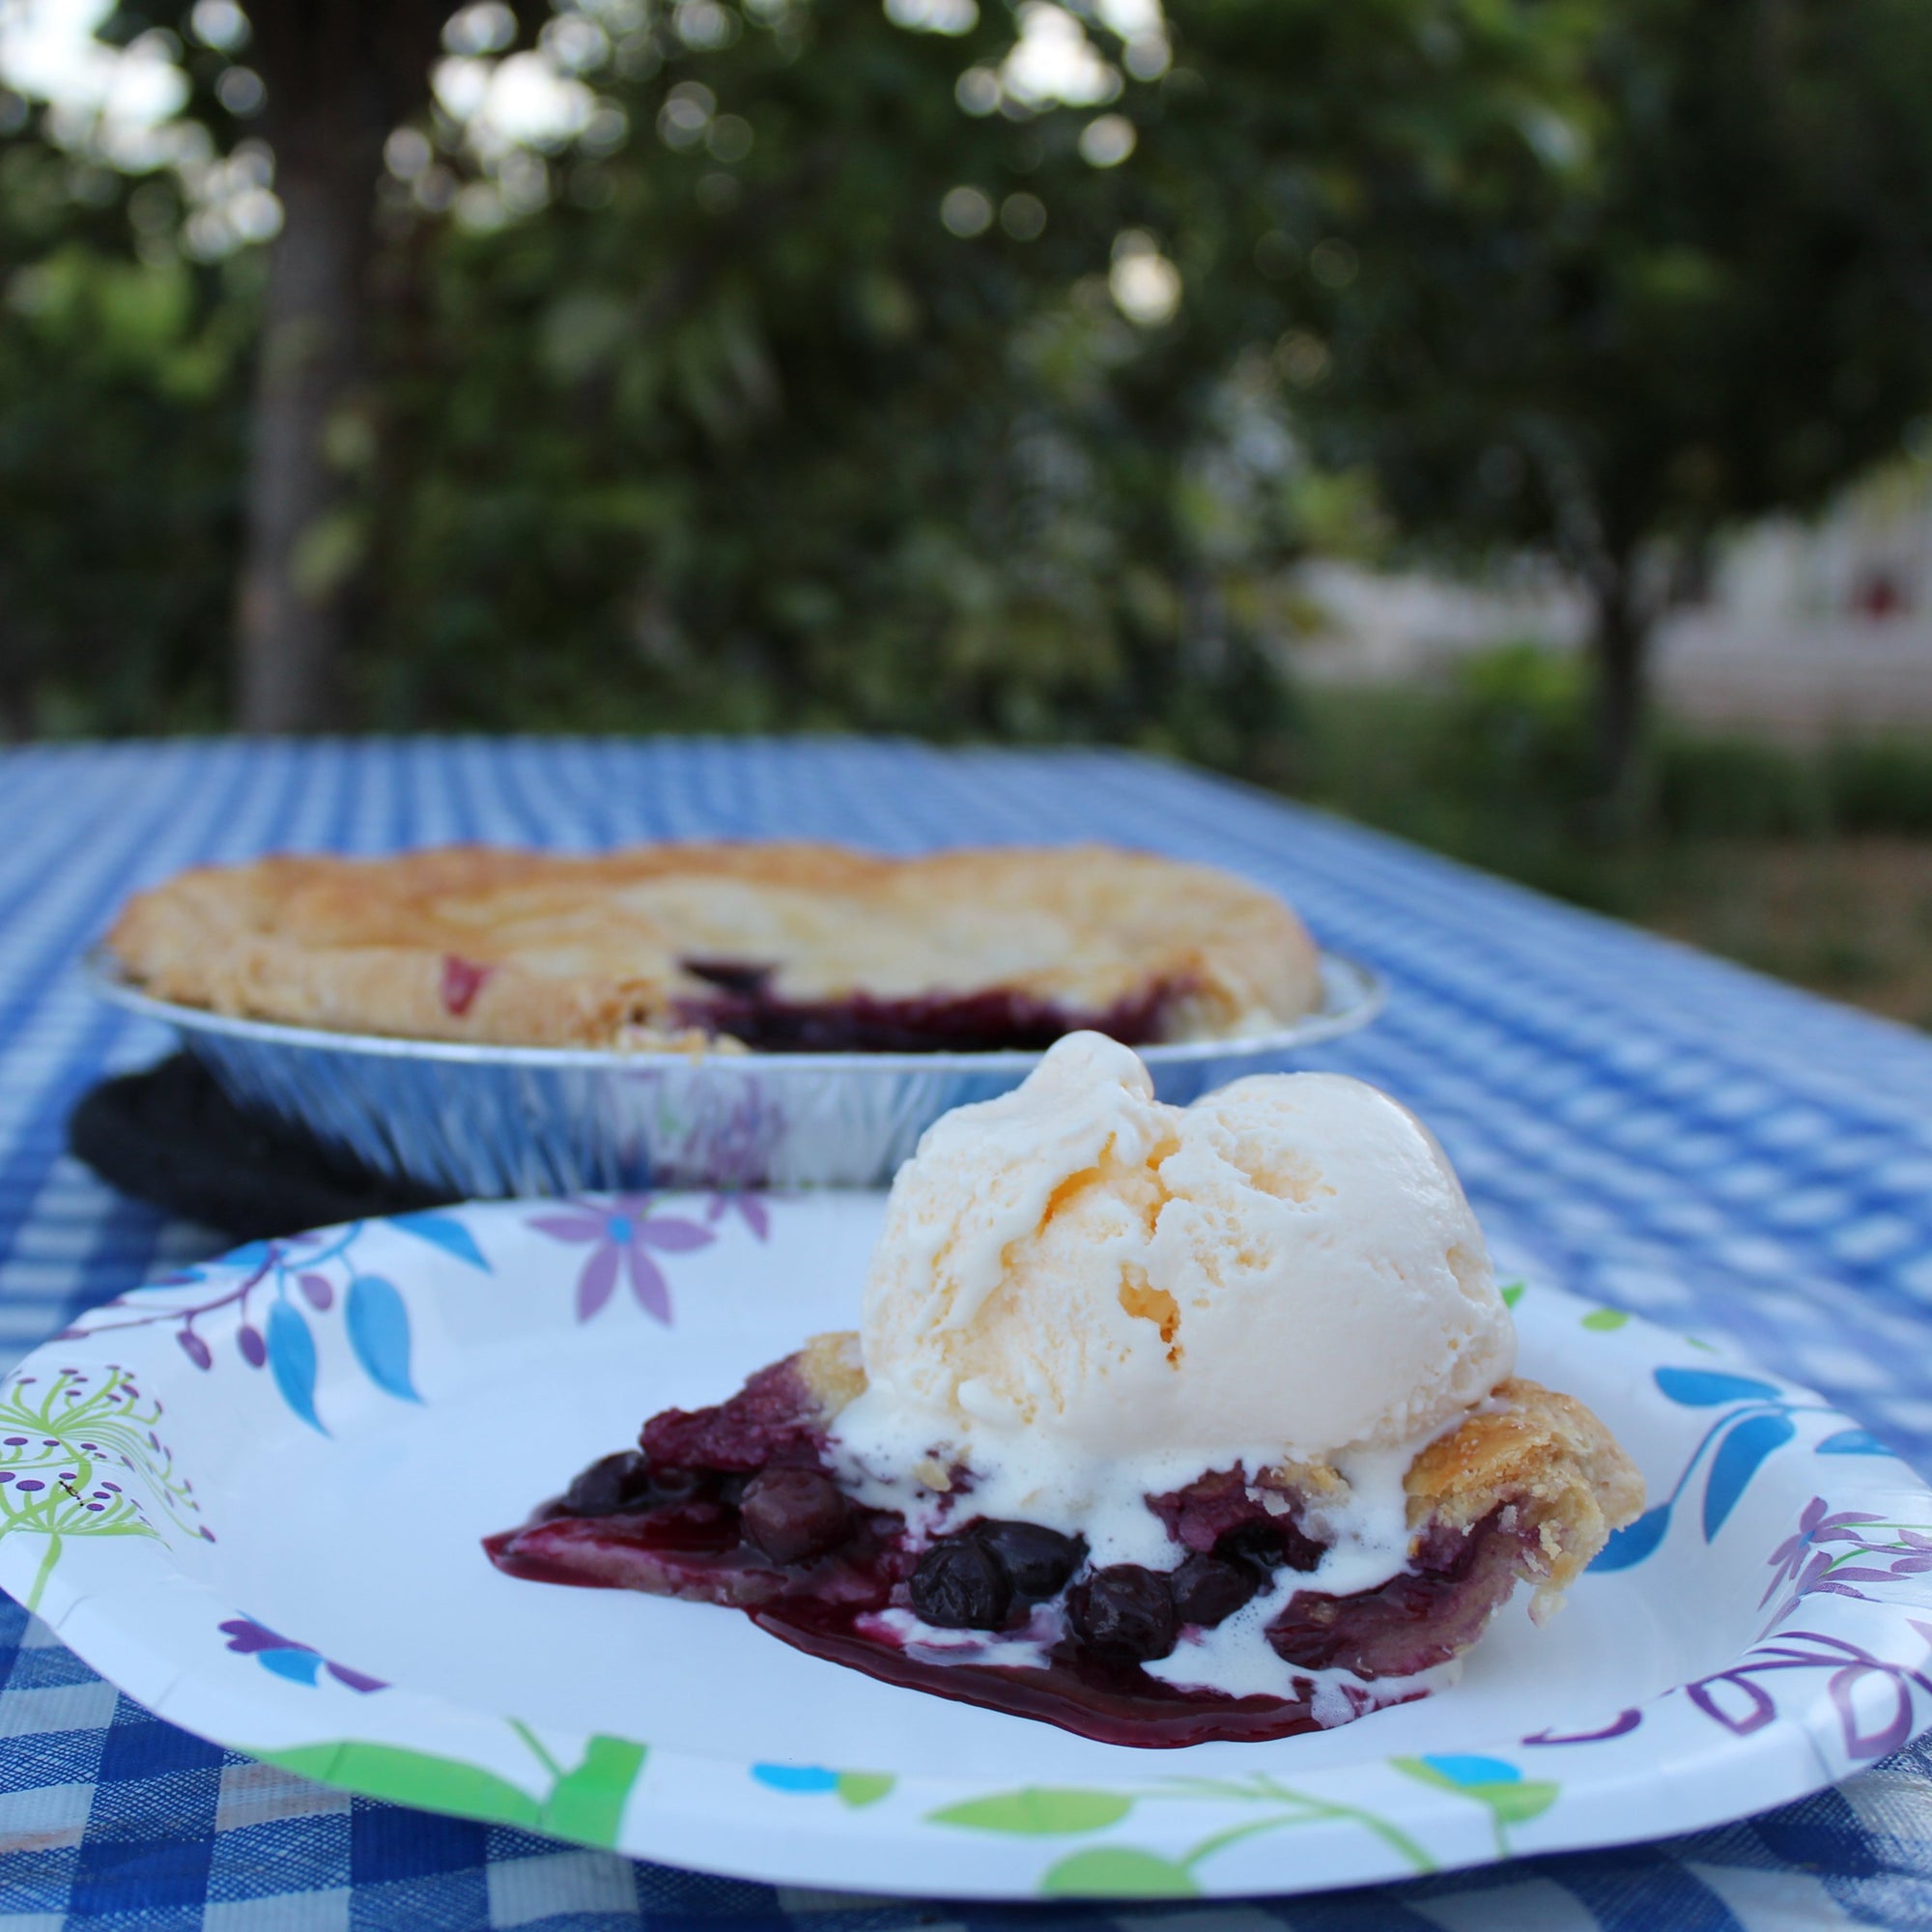 Blueberry Pie with ice cream